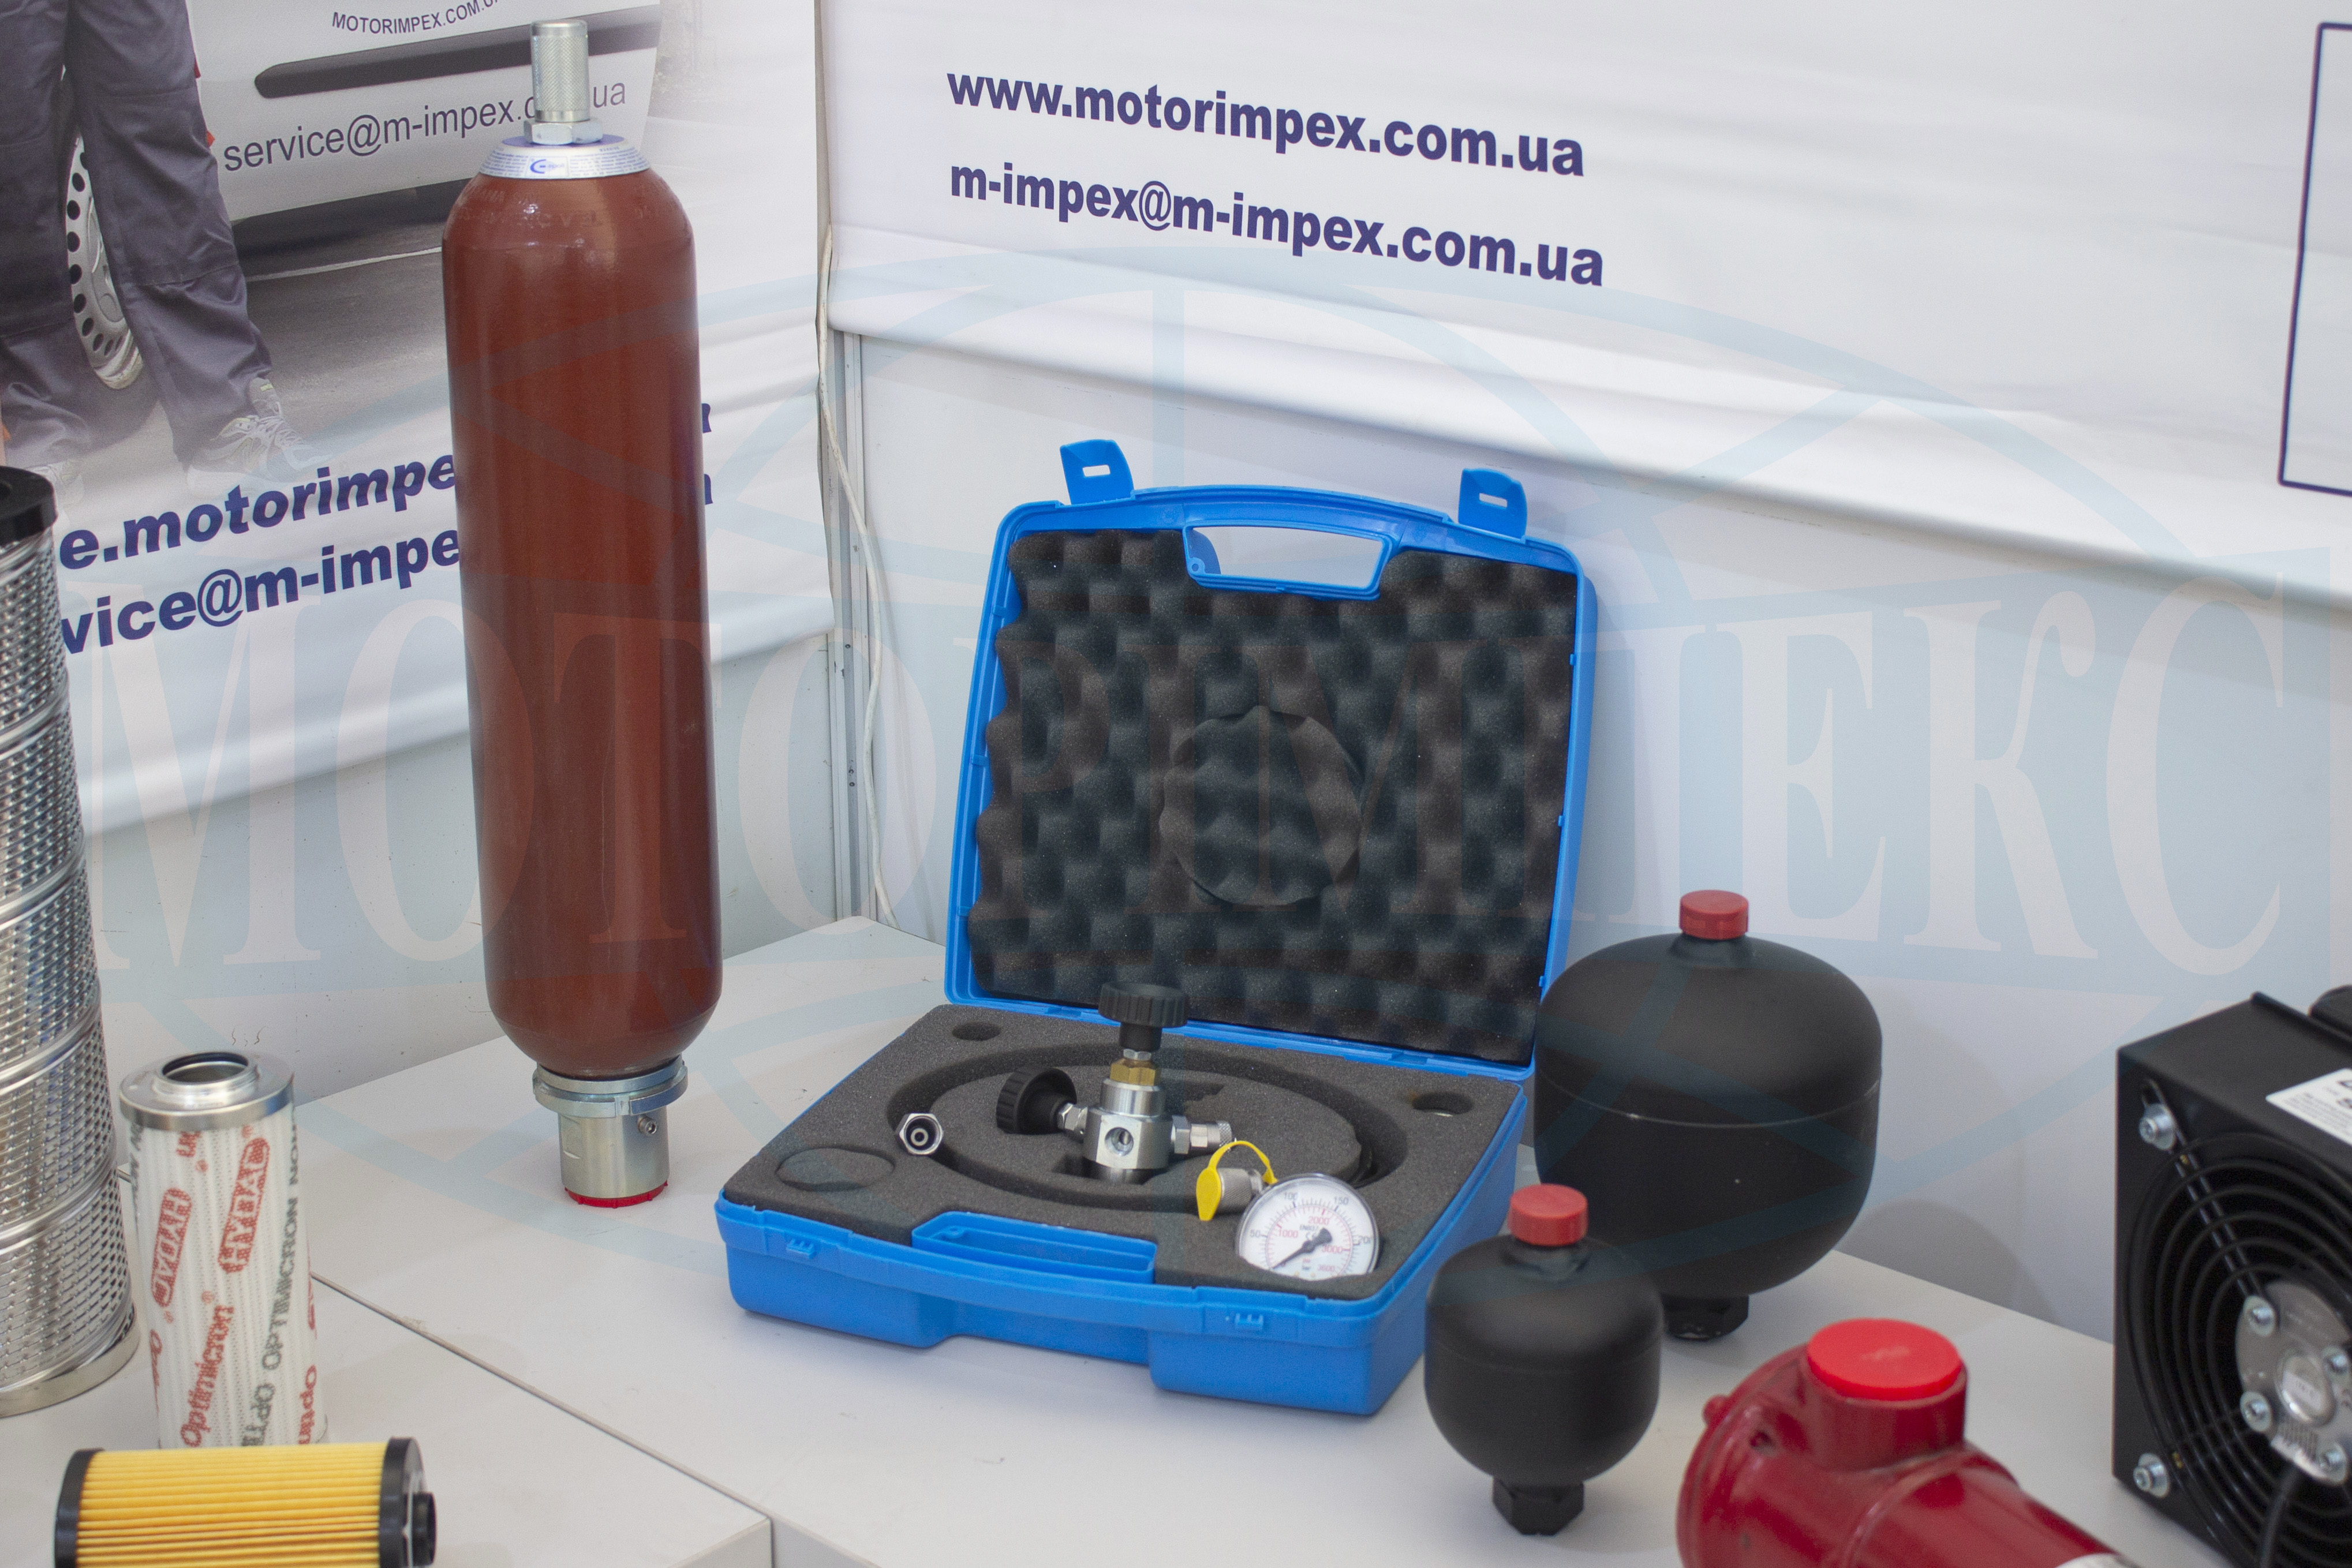 Гидроаккумуляторы мембранные и балонный с устройством для зарядки от «Моторимпекс»